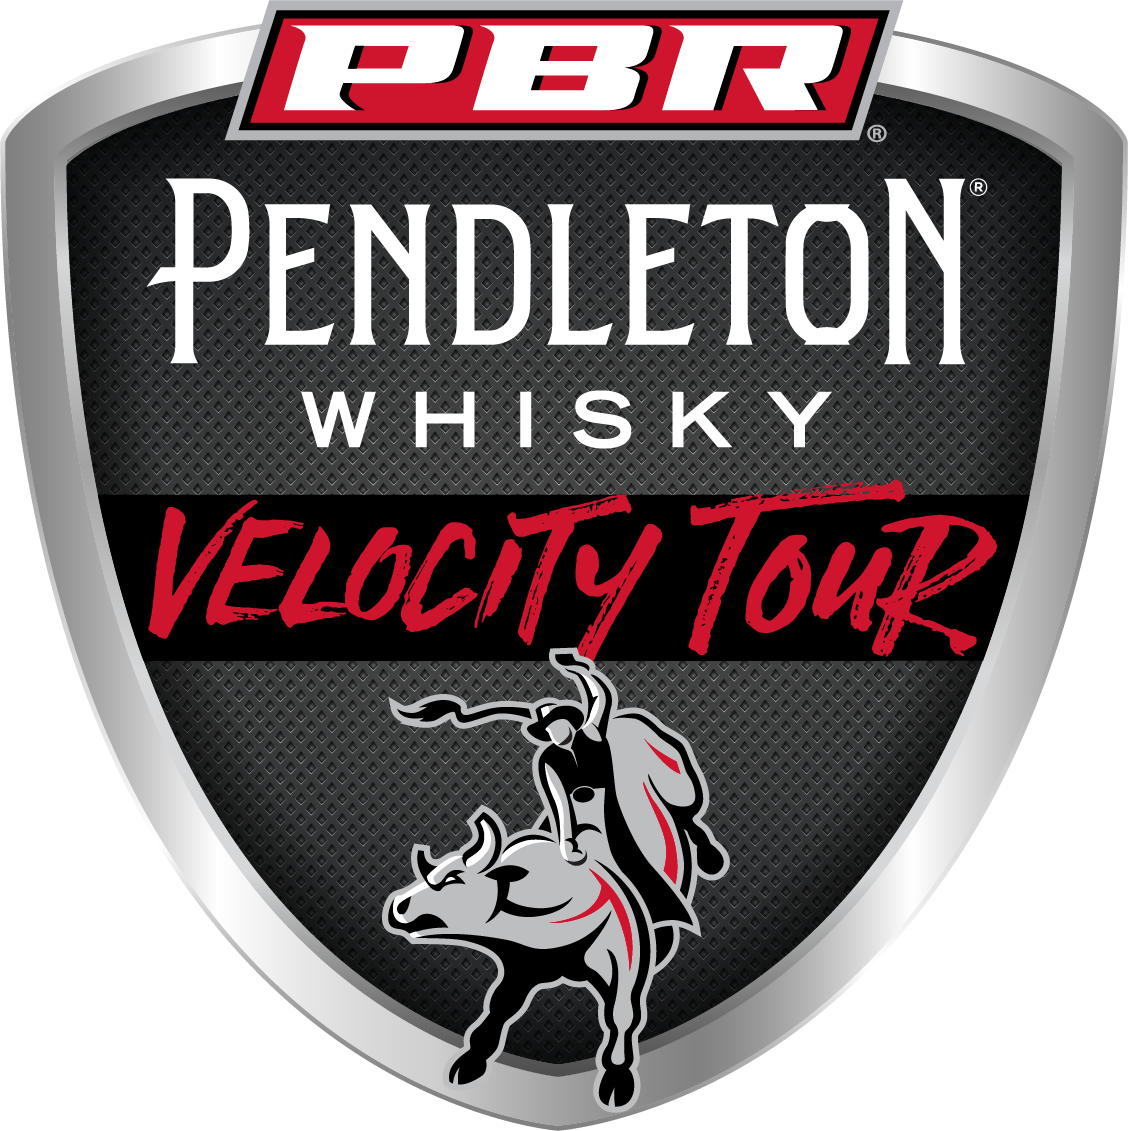 PendletonVelocityTour logo